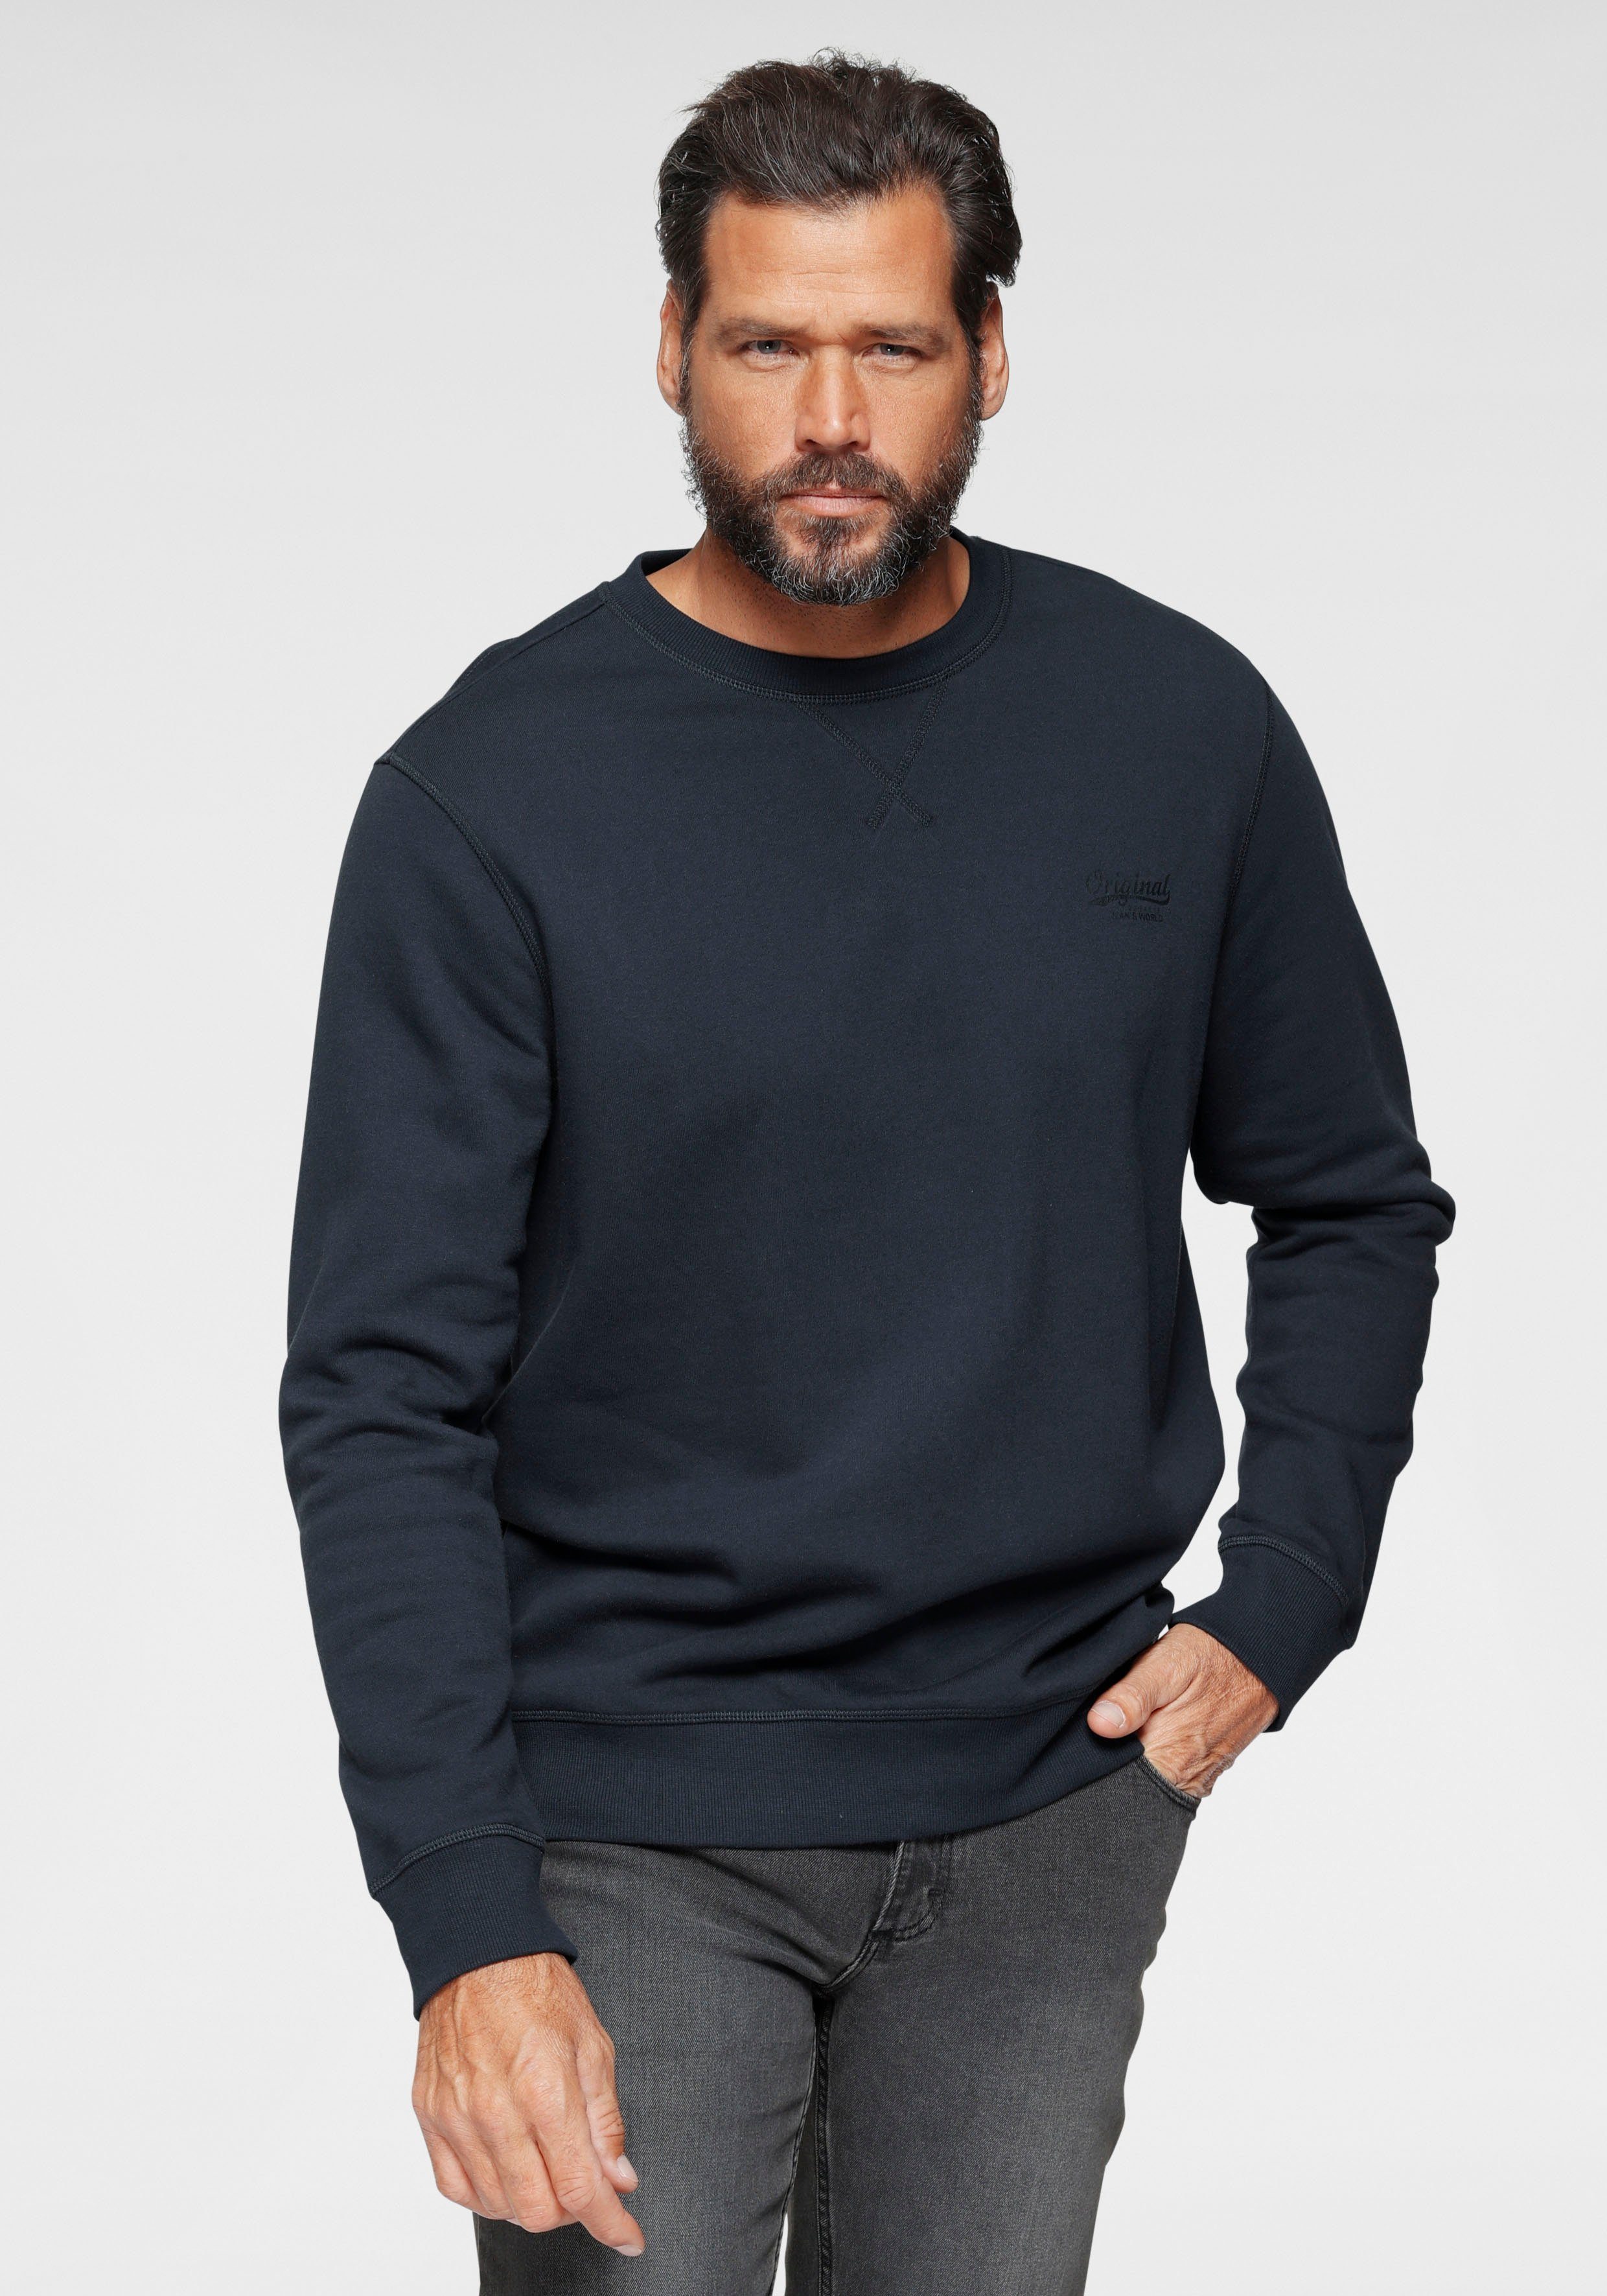 Günstige Sweatshirts kaufen » Bis zu 40% Rabatt | OTTO